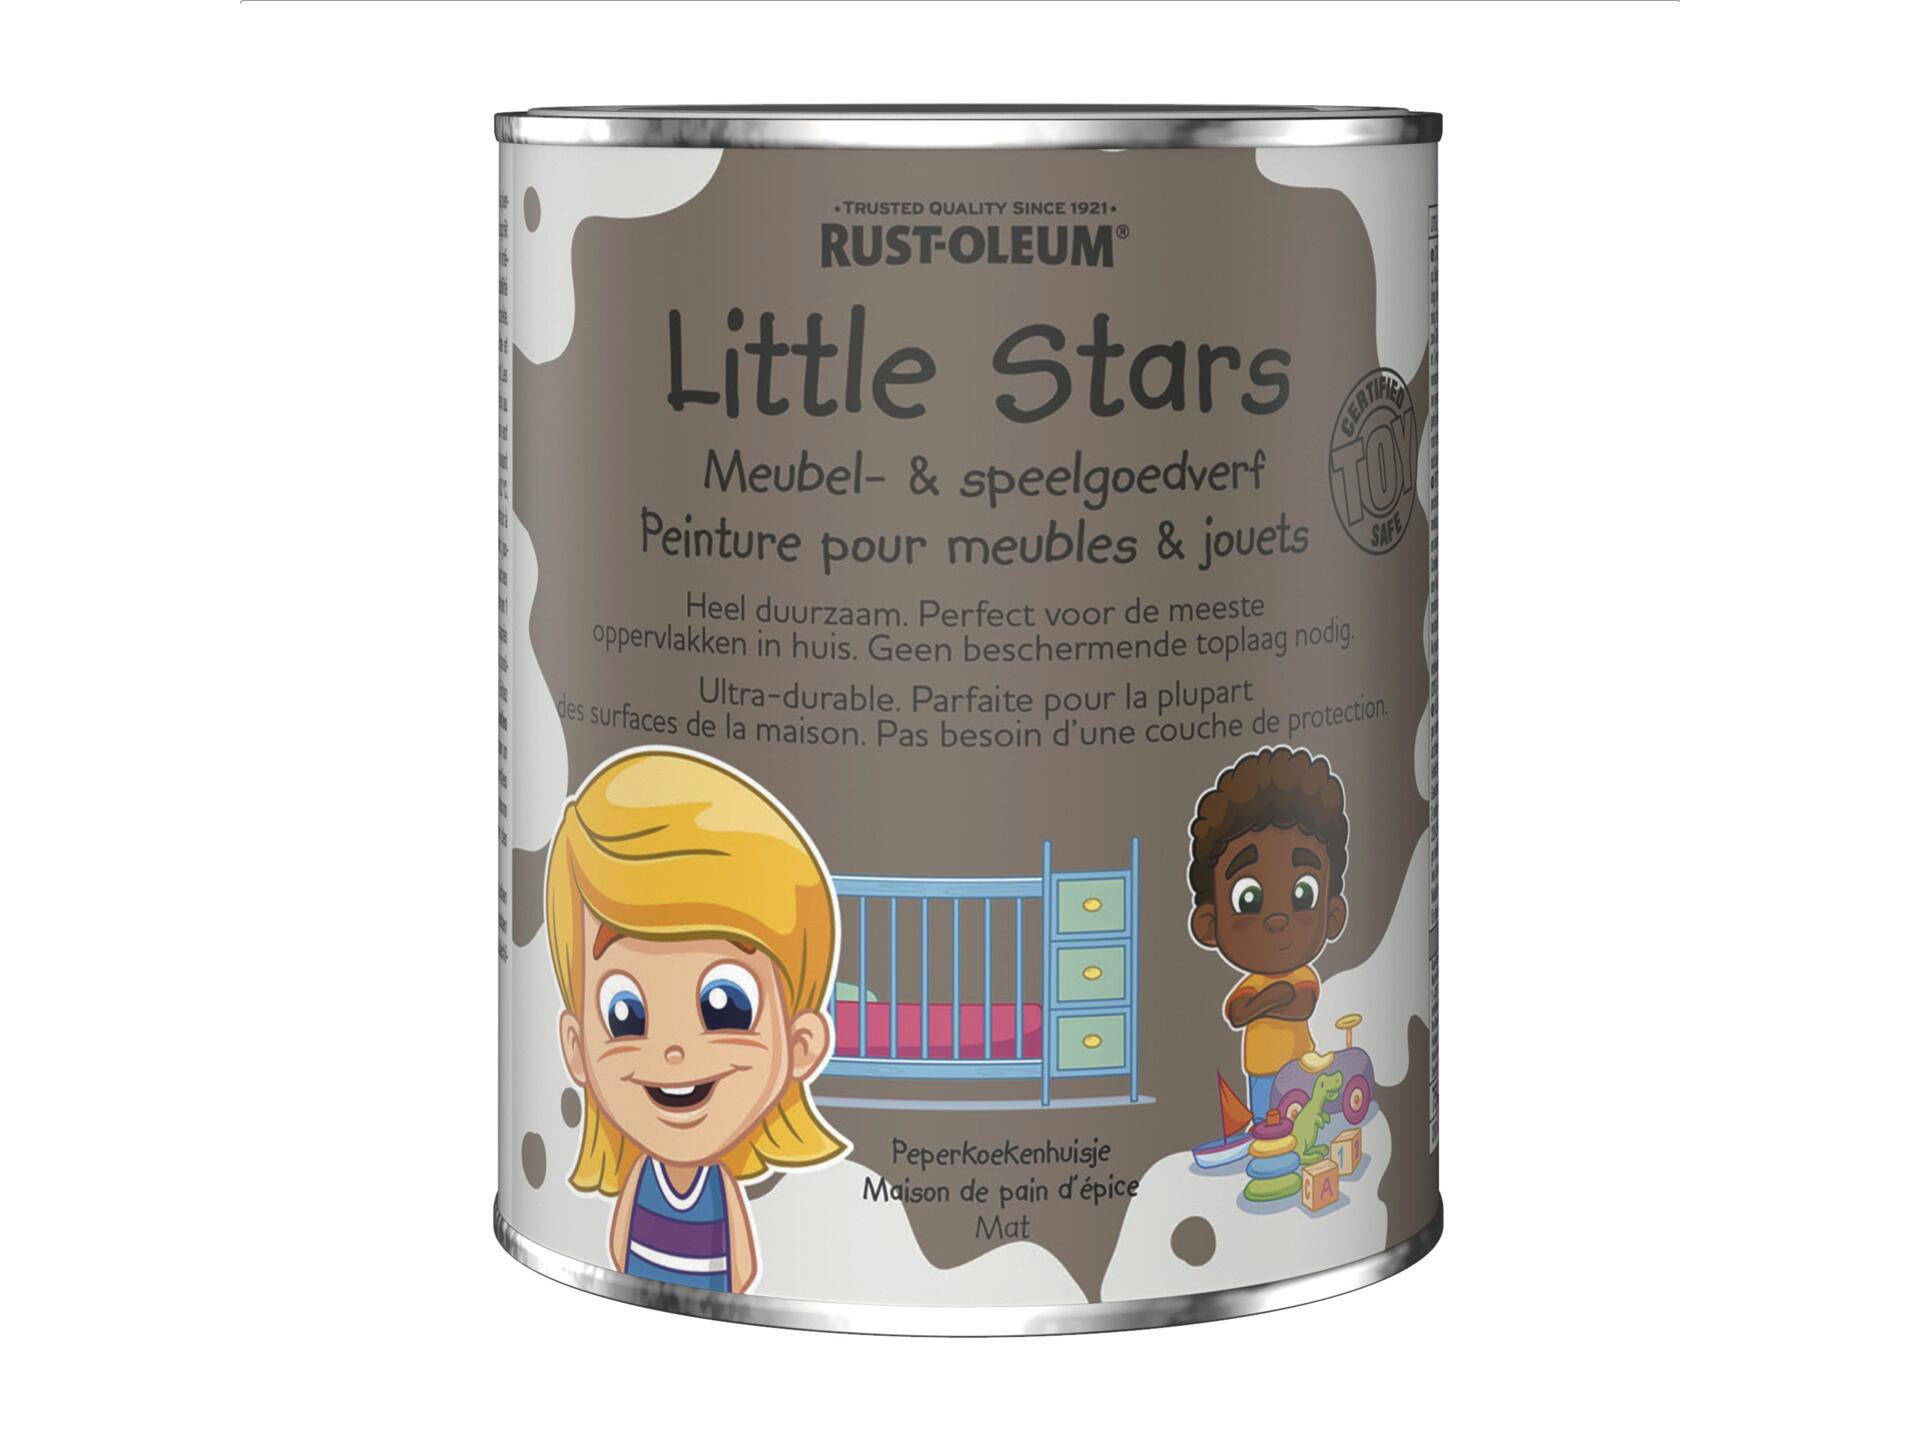 Rust-oleum Little Stars meubel- en speelgoedverf 750ml peperkoekenhuisje